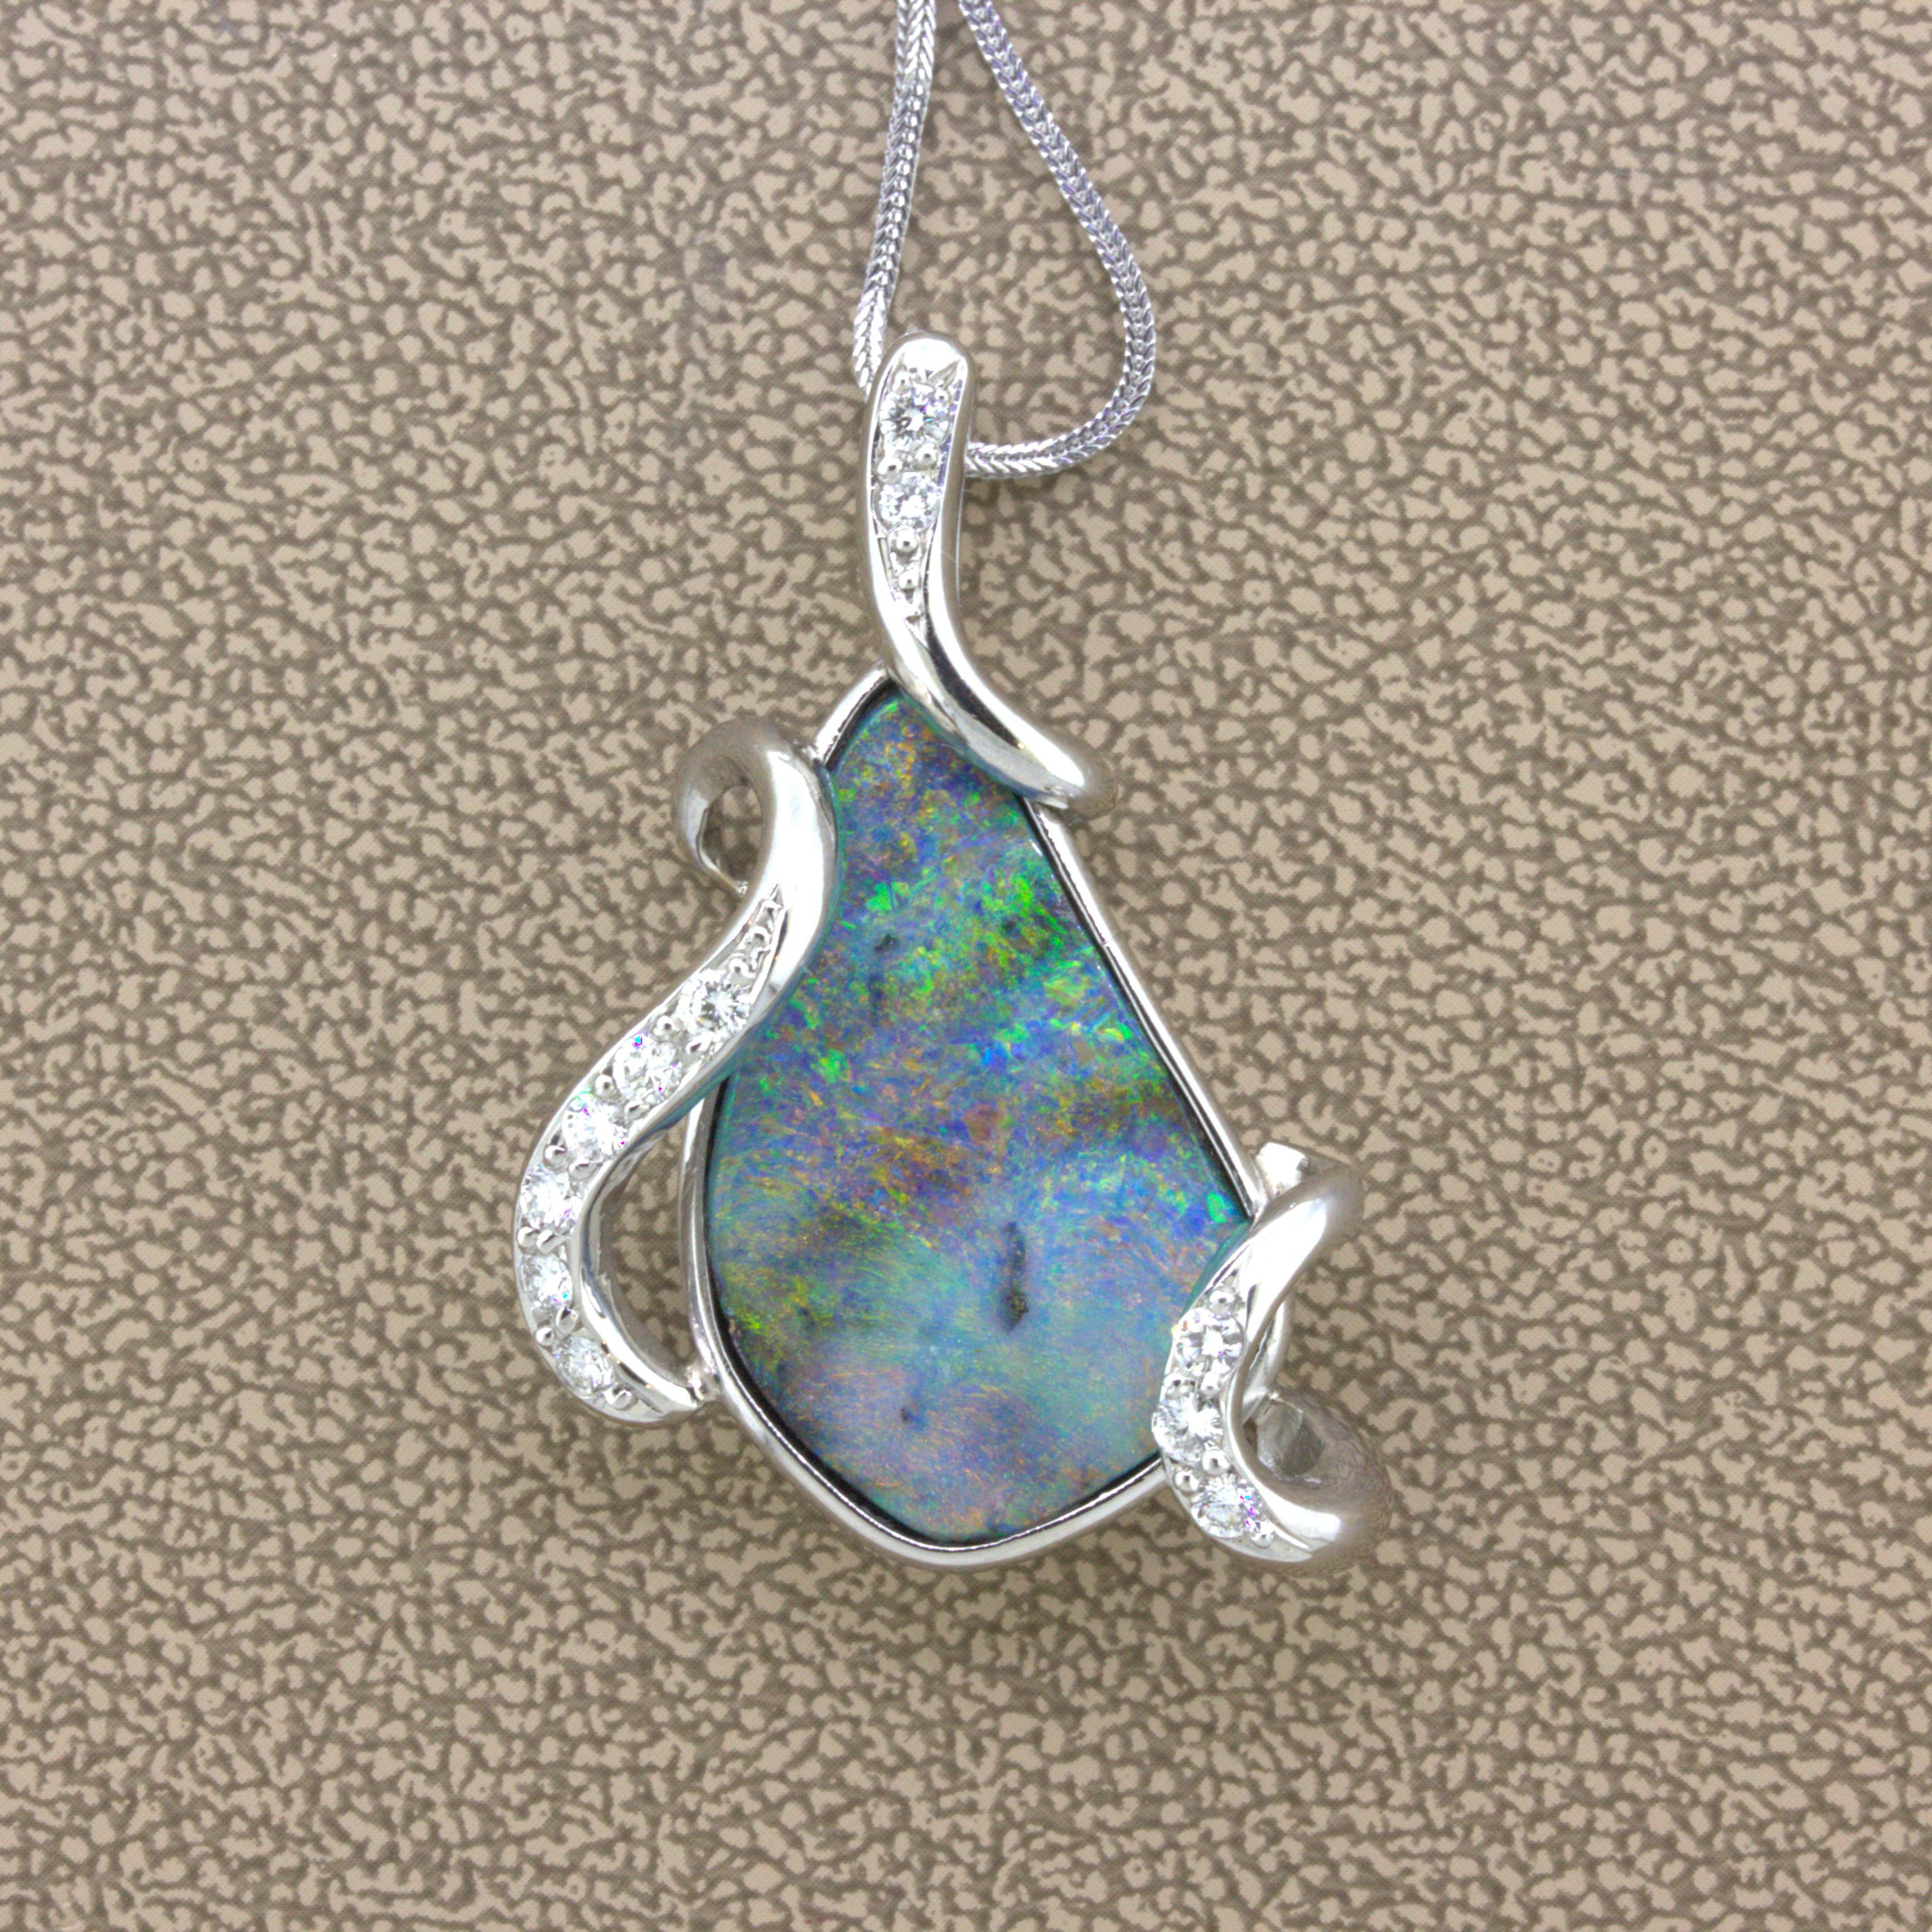 Ein schönes Beispiel für die Schönheit des australischen Boulder-Opals. Dieses Stück wiegt etwa 10 Karat und zeigt so gut wie jede Farbe in einem weichen Pinselstrichmuster. Ergänzt wird er durch 0,34 Karat runde Diamanten im Brillantschliff, die in